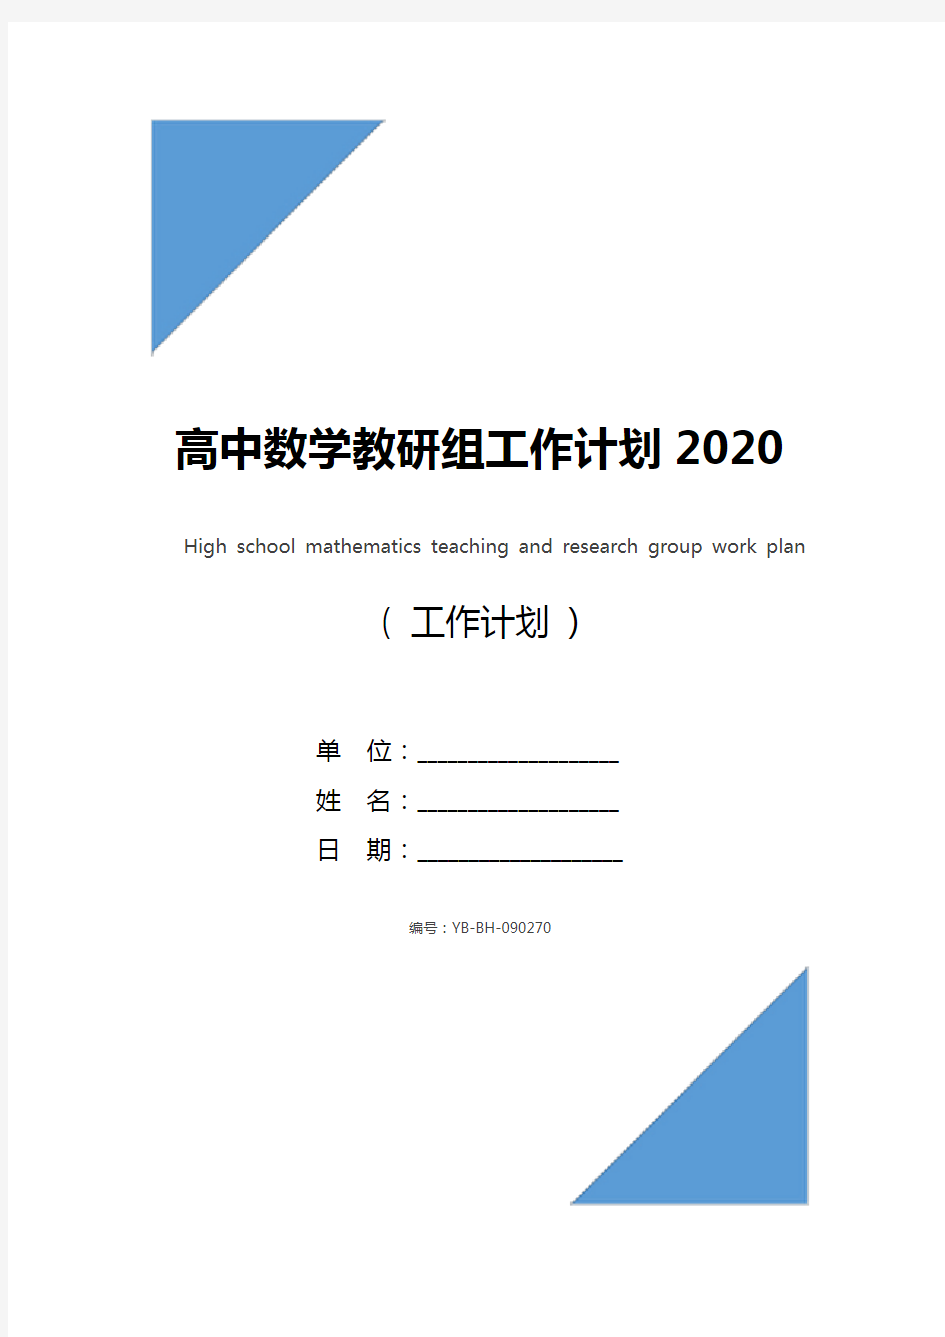 高中数学教研组工作计划2020